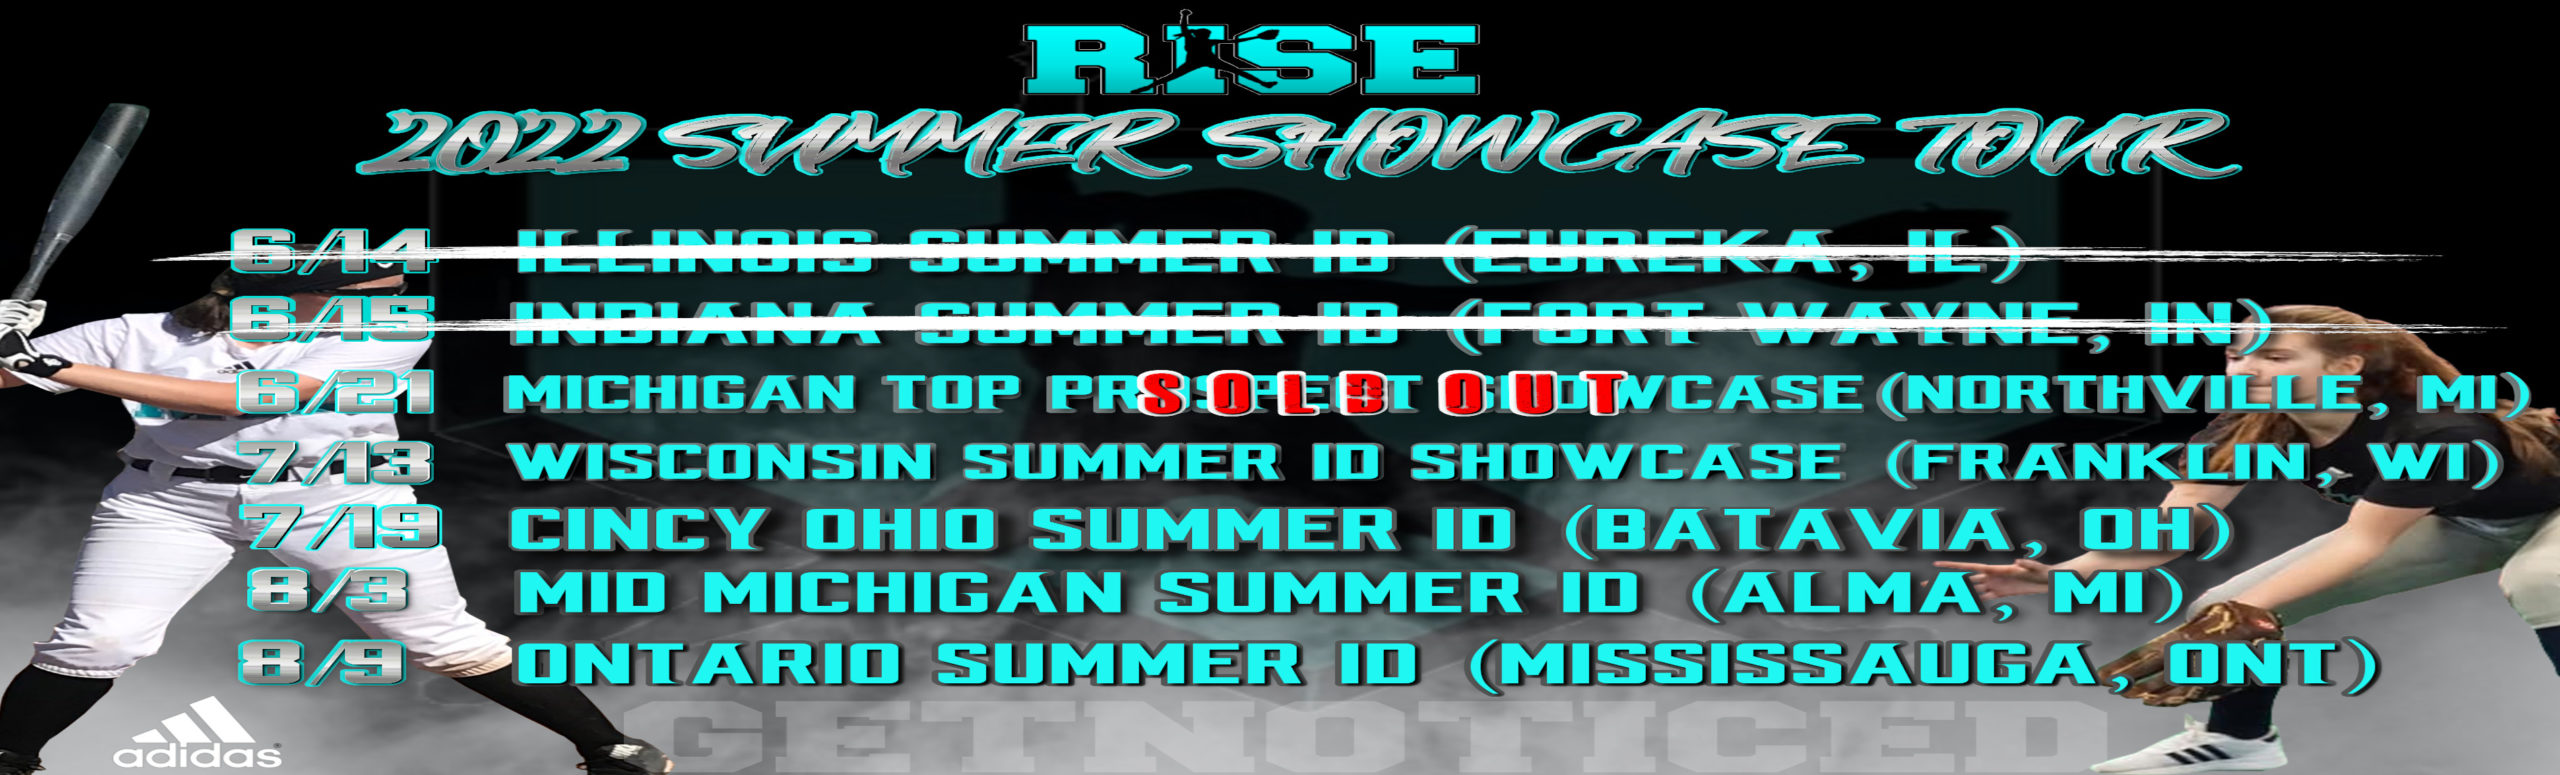 2022 RISE-Summer Showcase Tour